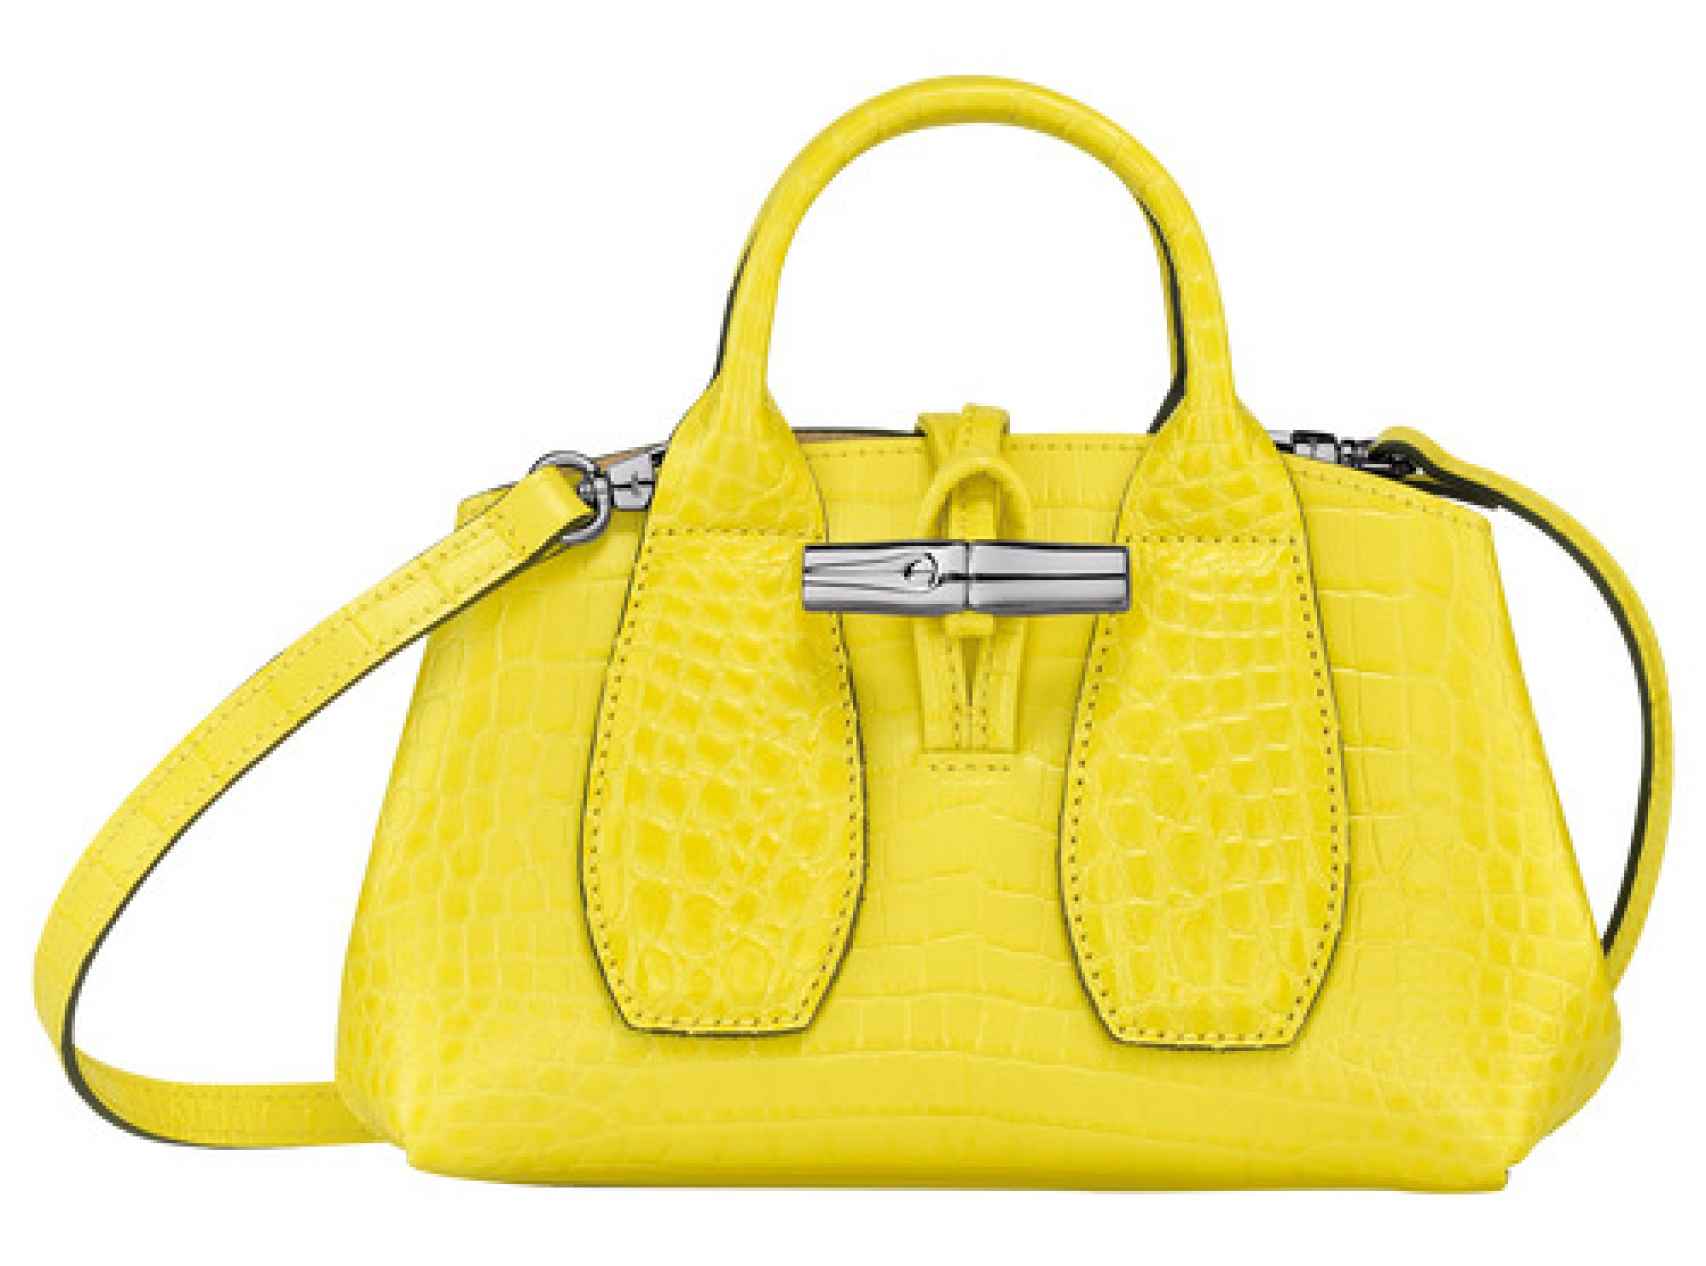 El bolso 'Roseau', de la firma Longchamp, pertenece a la nueva colección y tiene un precio de 390 euros.